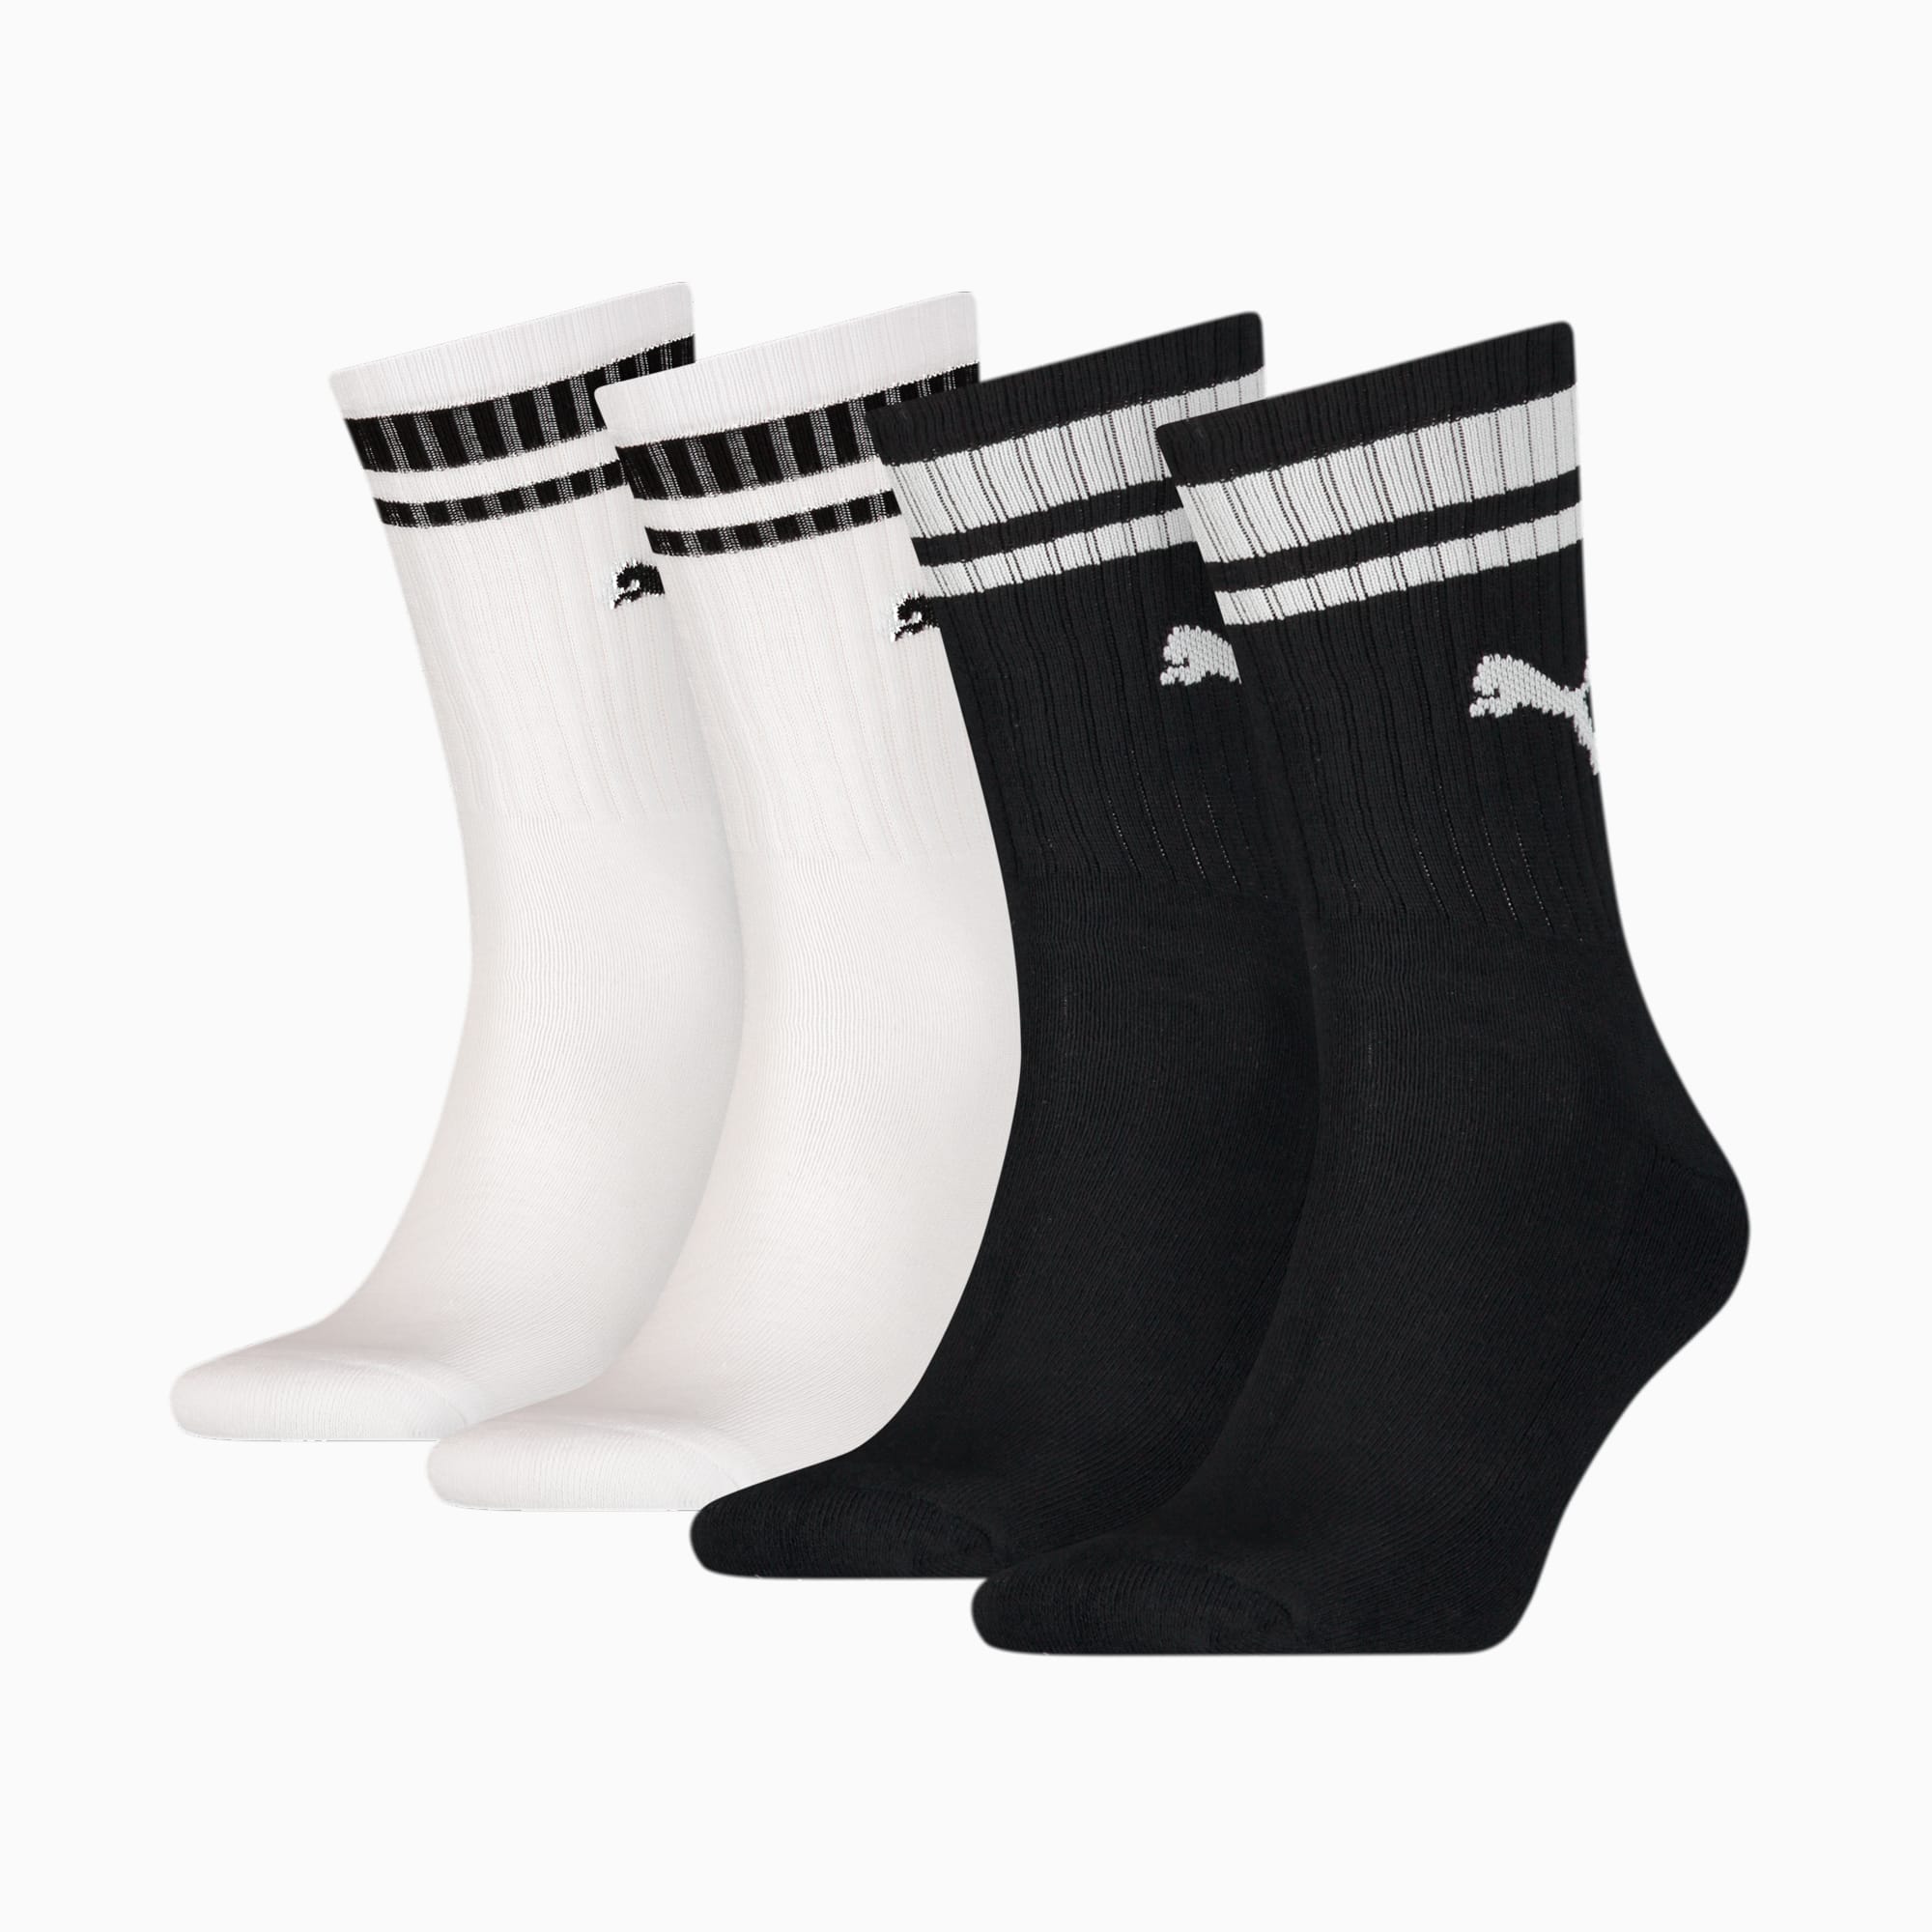 PUMA Unisex Heritage Crew sokken (set van 4), Zwart/Wit